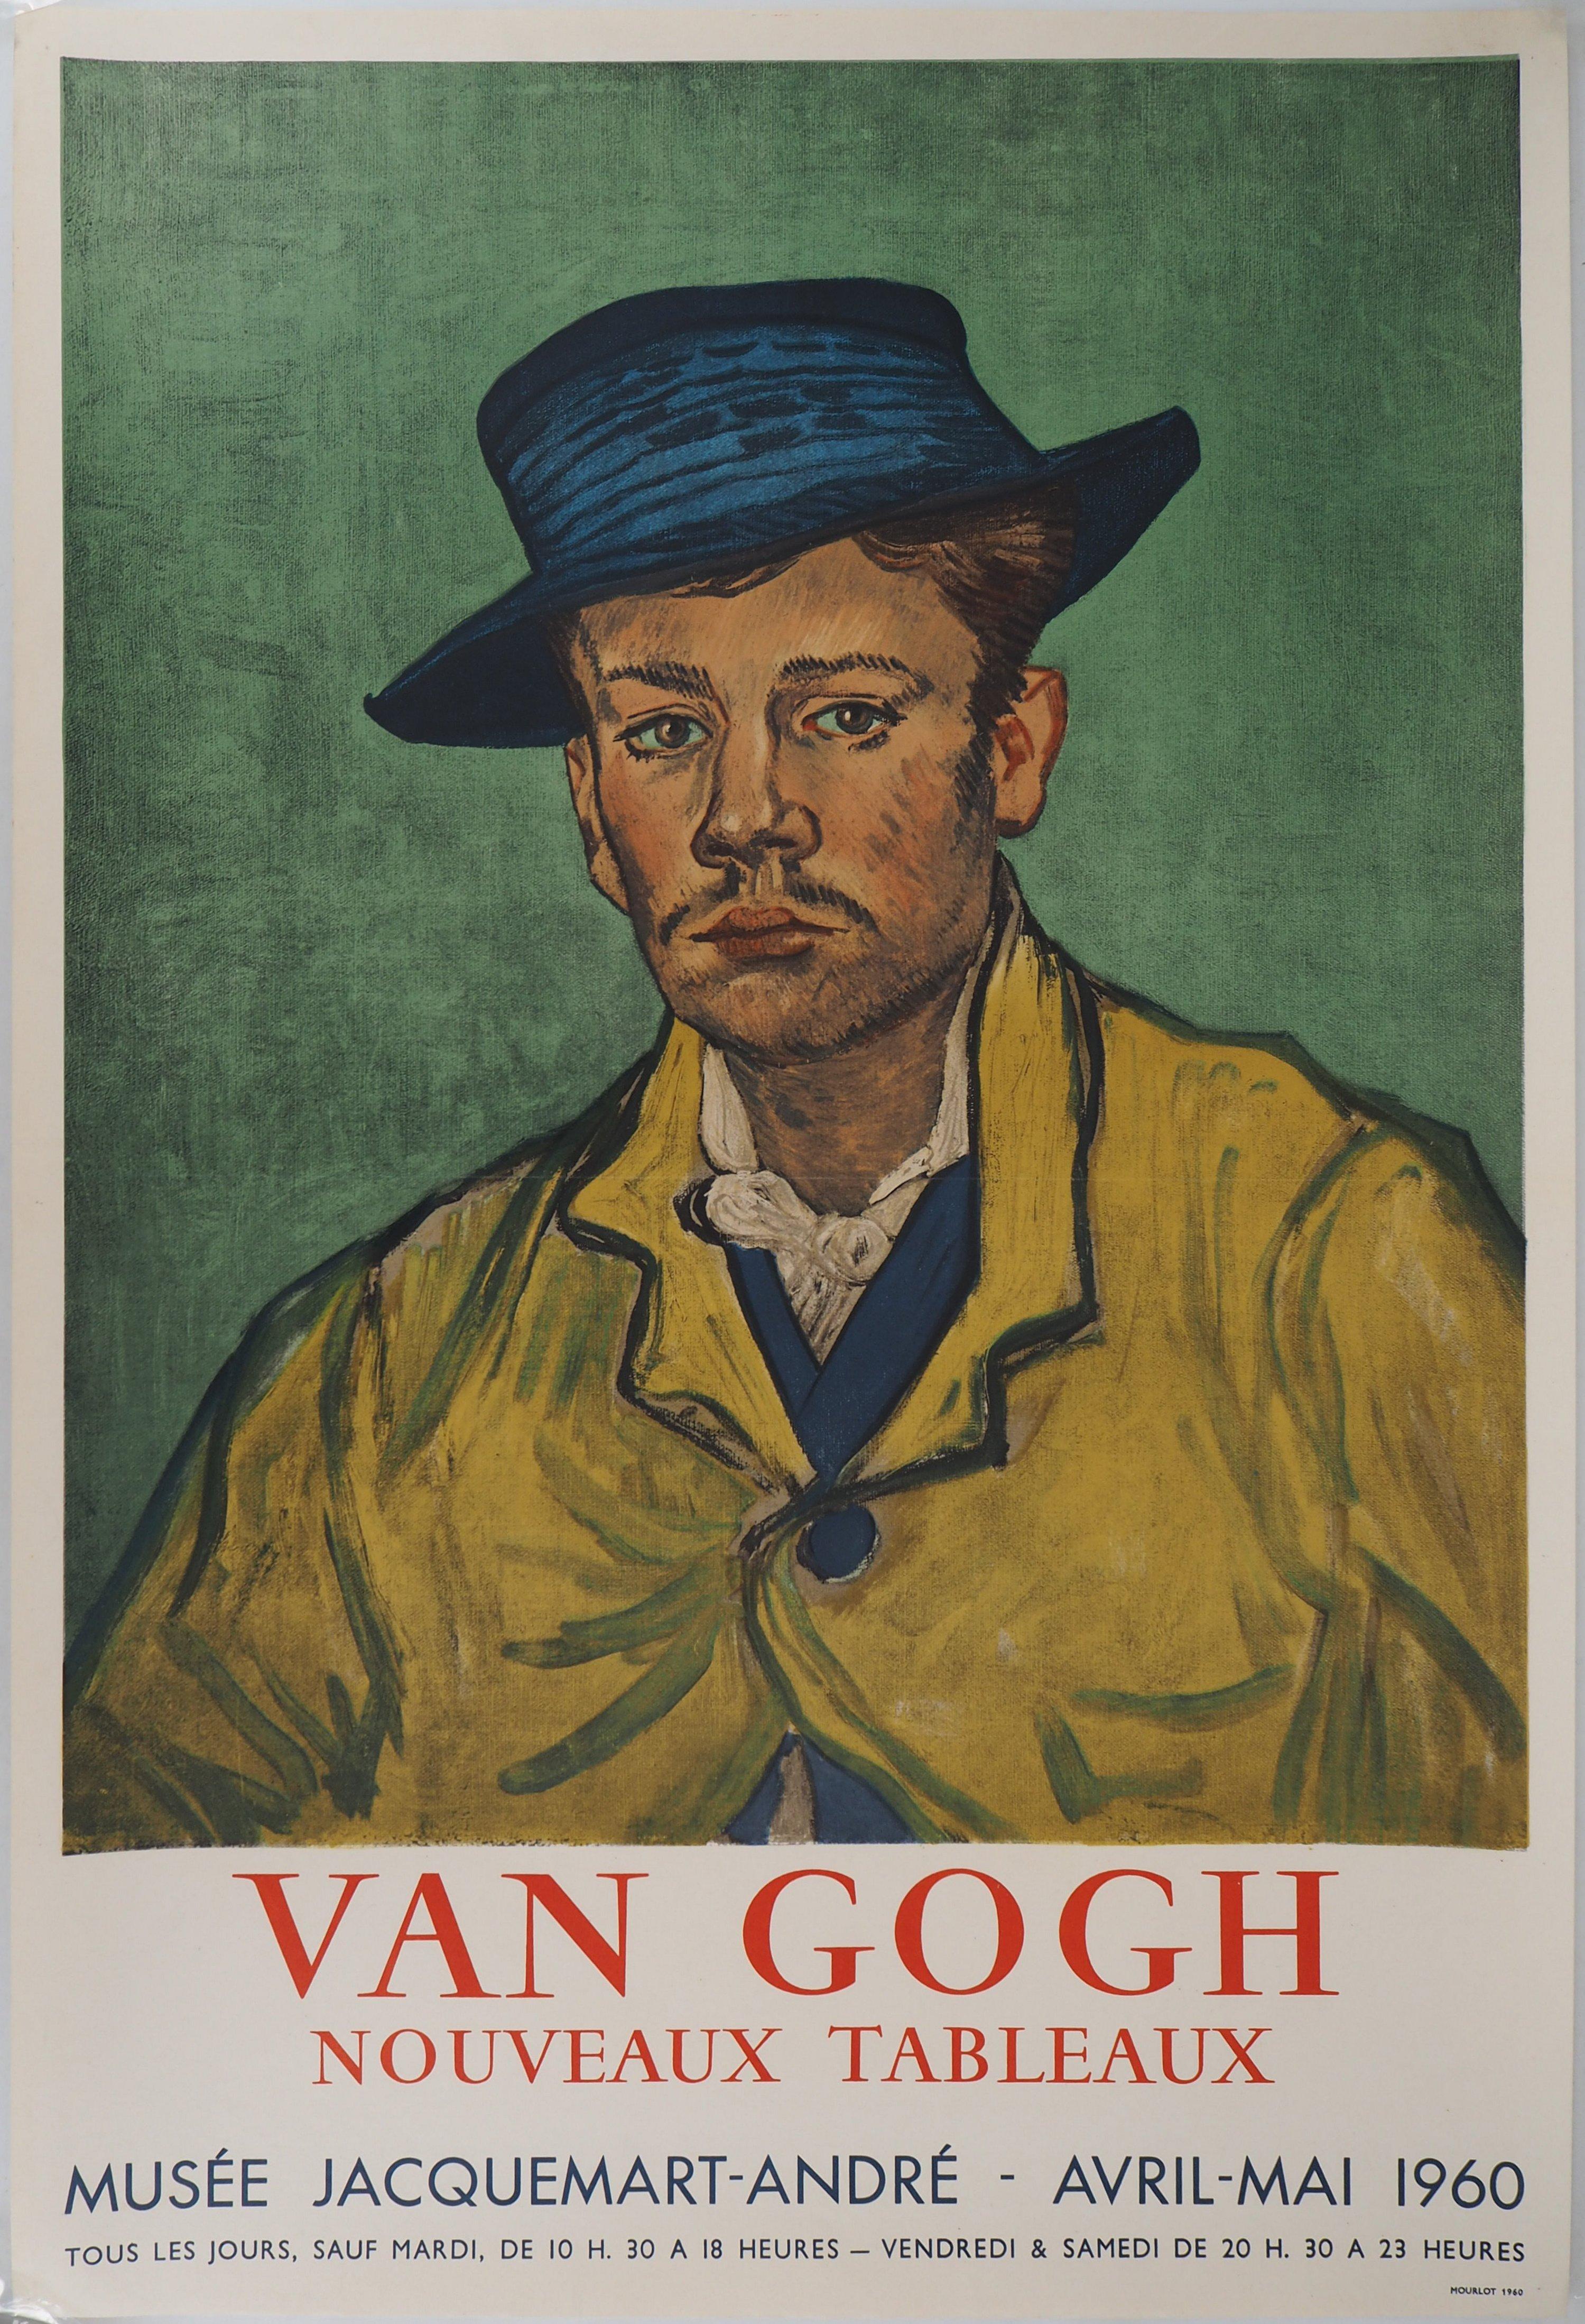 Vincent van Gogh Portrait Print - Man with Blue Hat, Stone lithograph, 1960